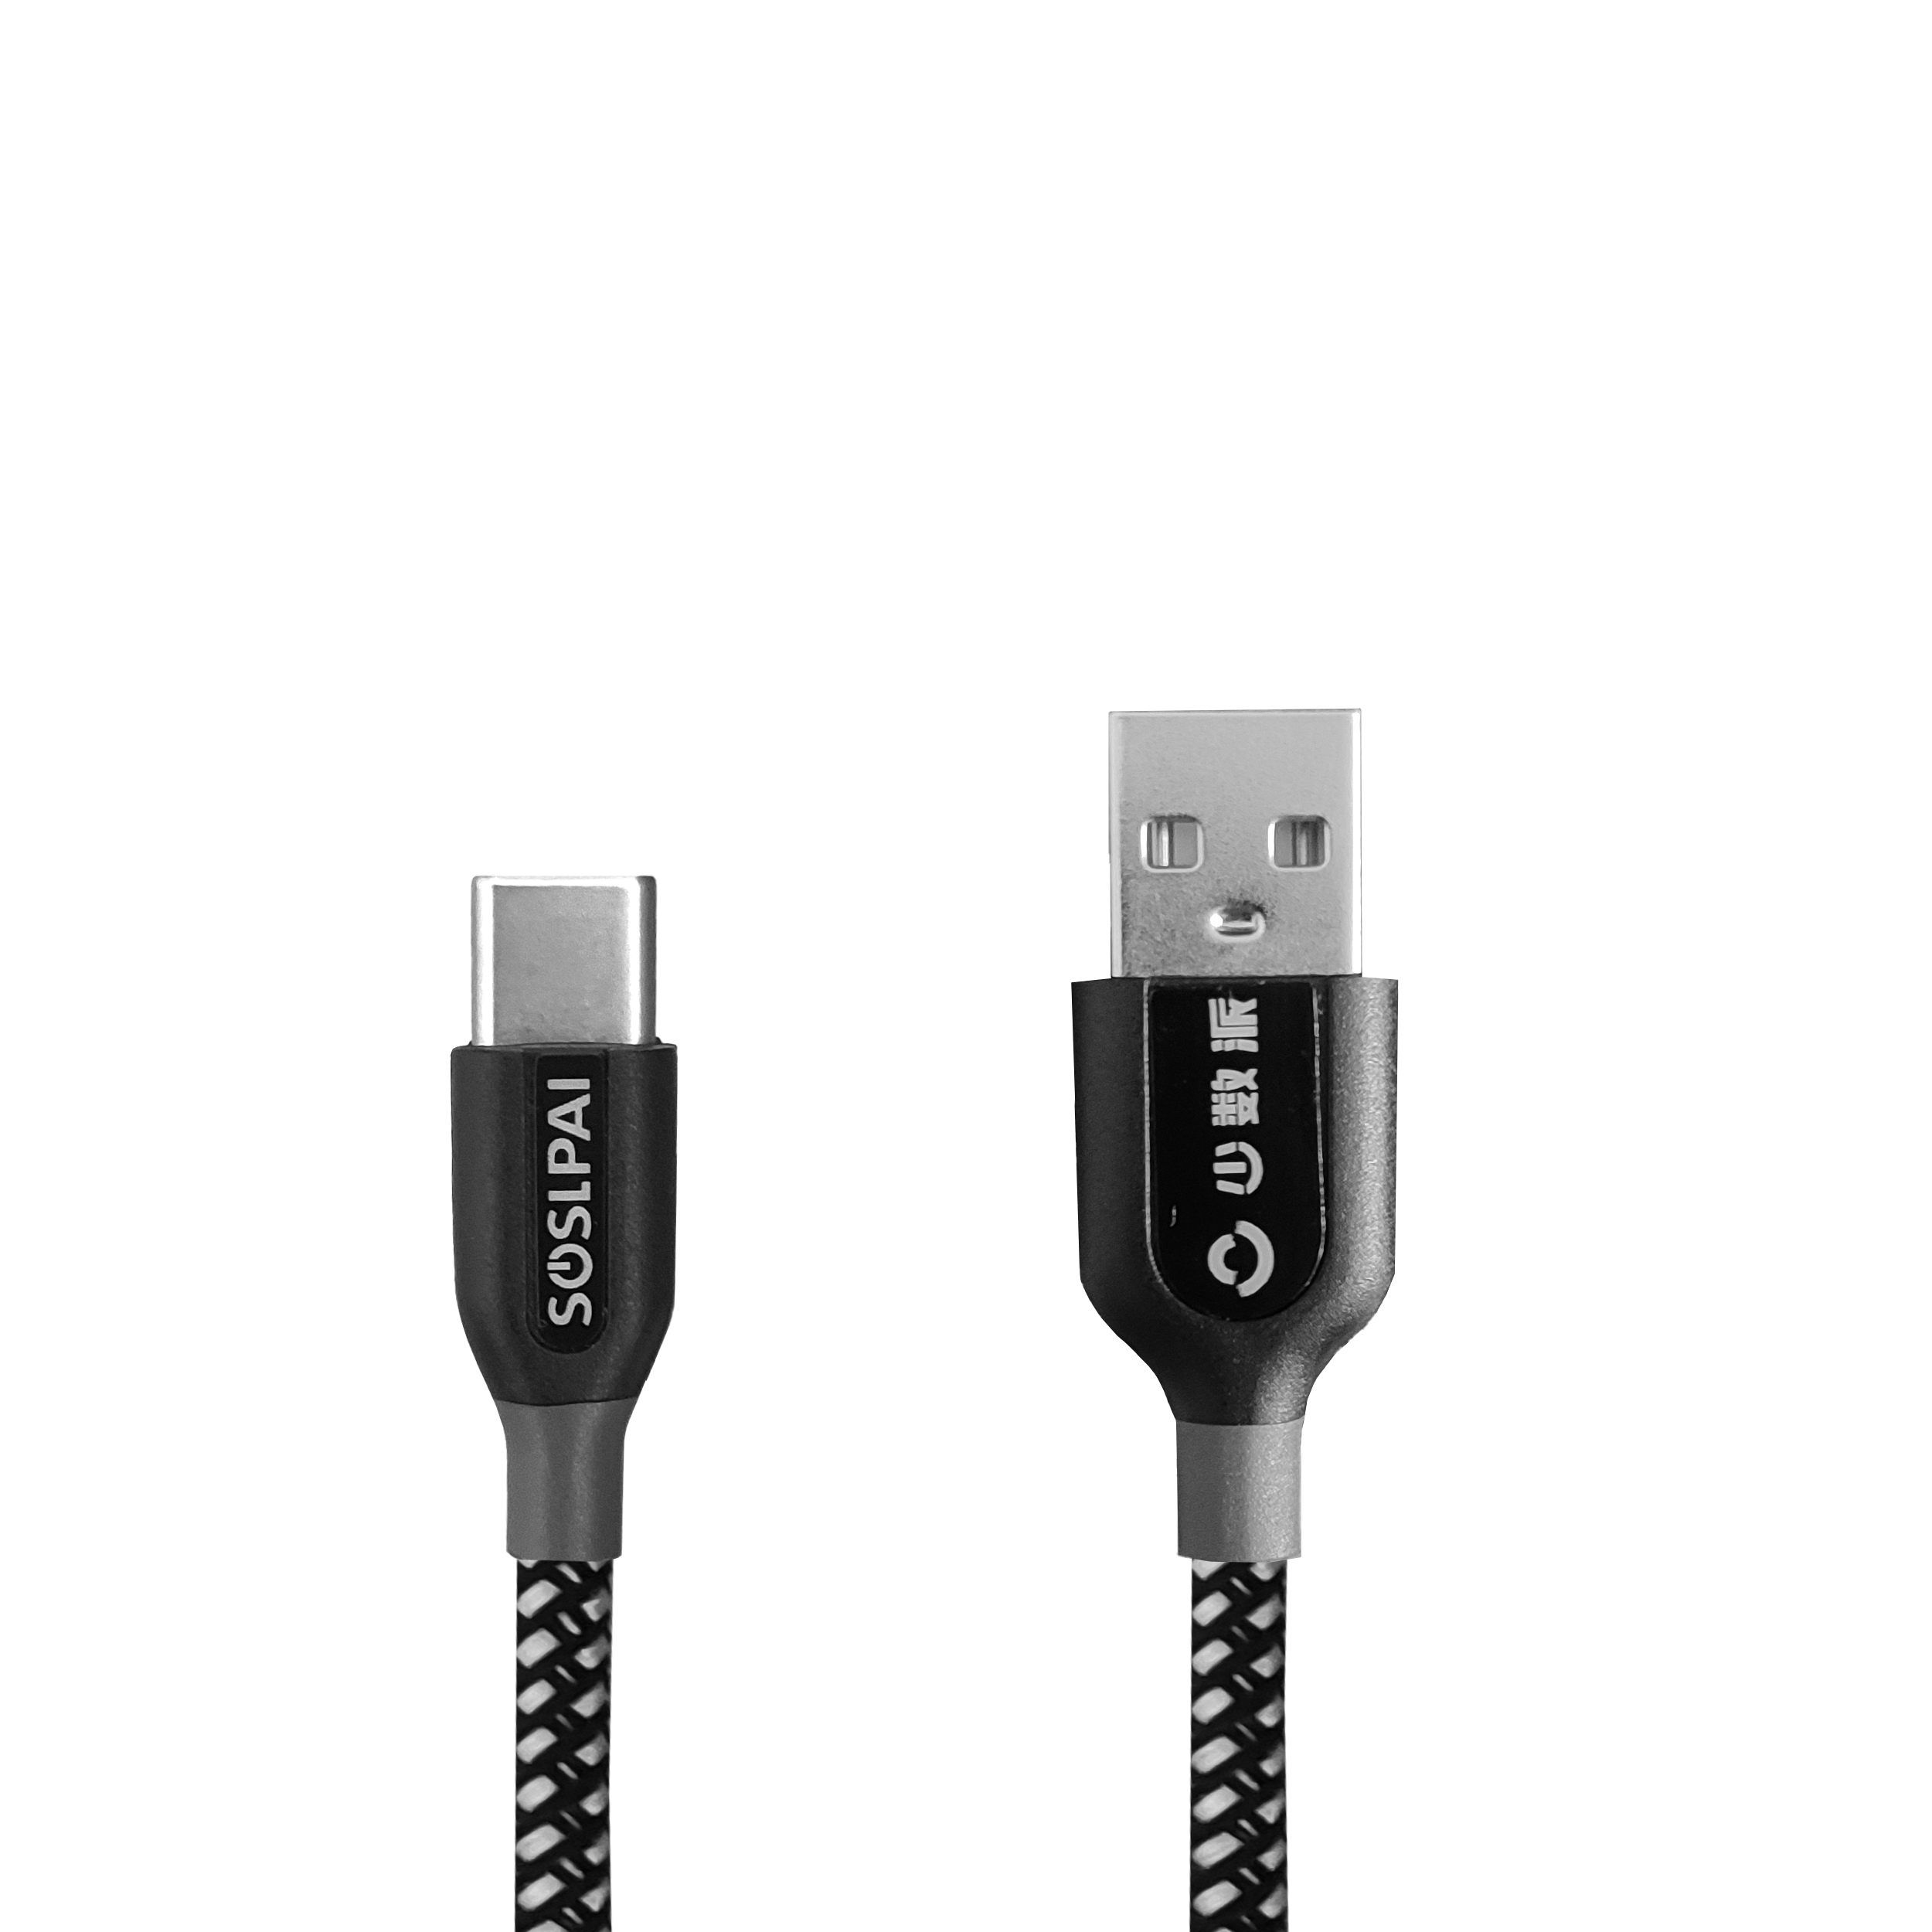  کابل تبدیل USB به USB-C سوسلپای کد s10 طول 1 متر